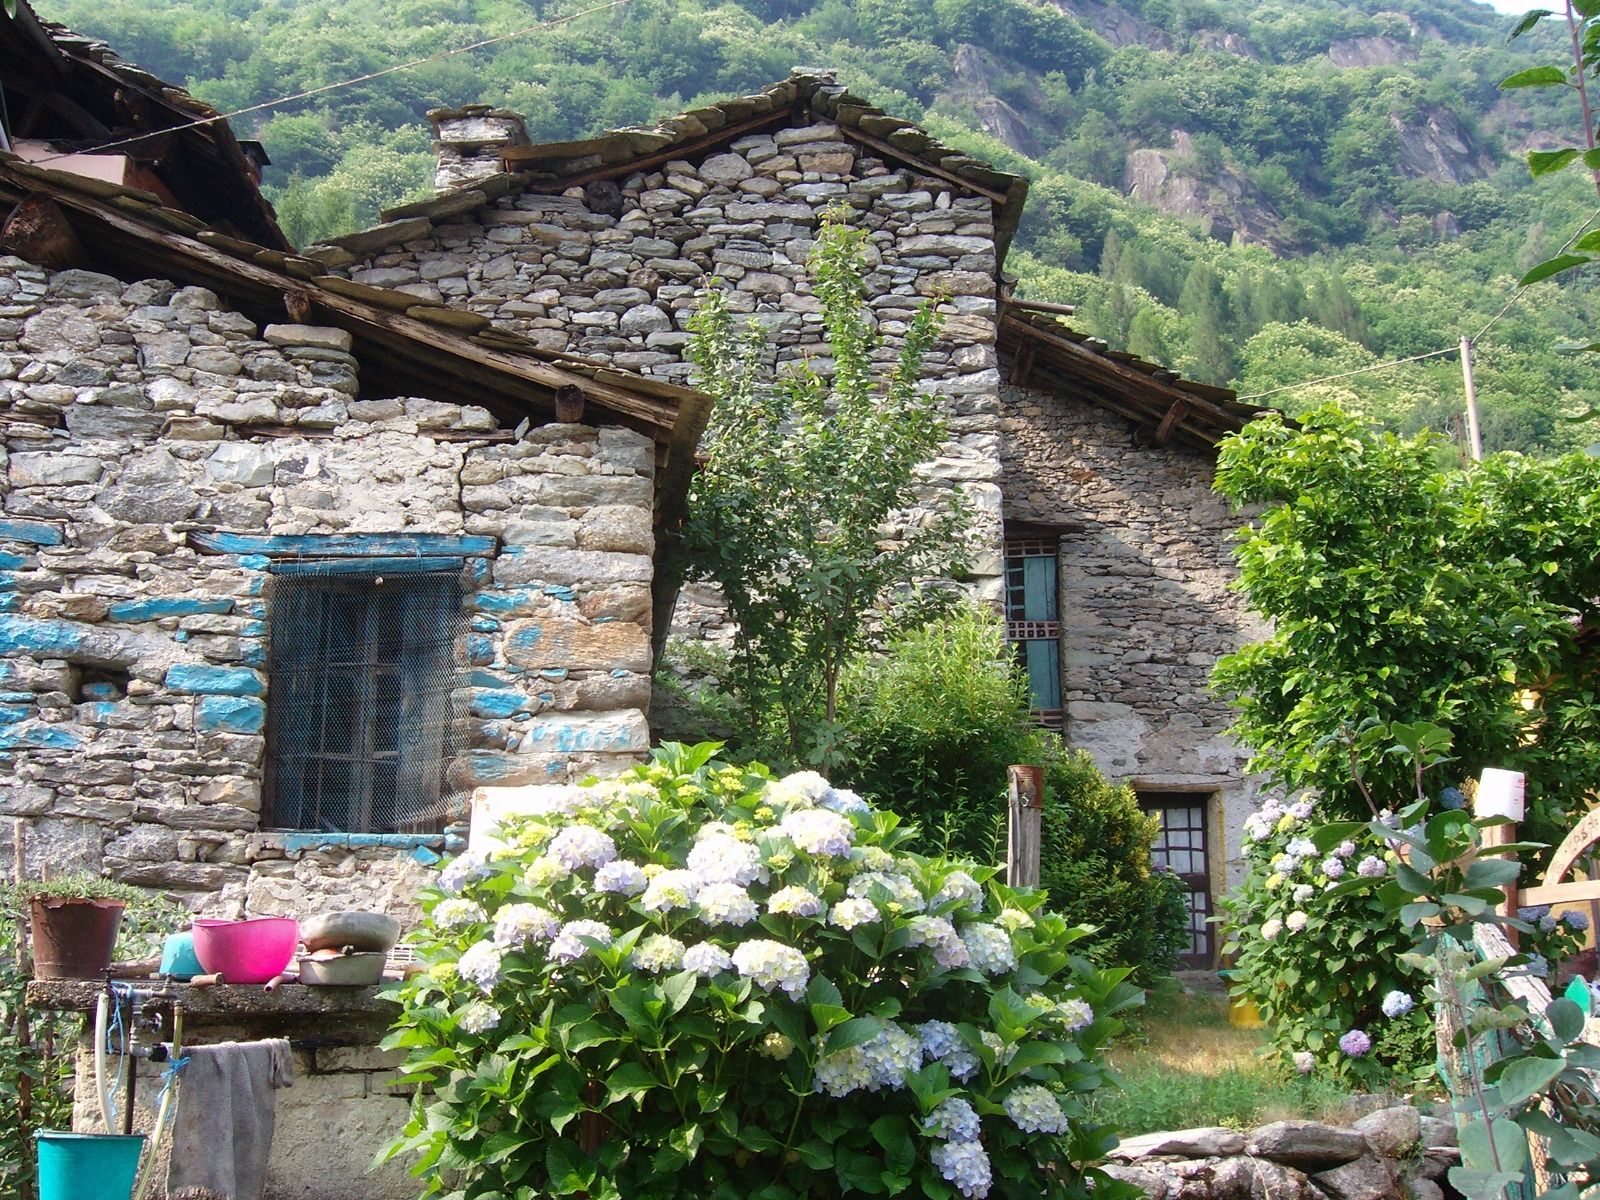 Купить дом в деревне италии недорого недвижимость в китае